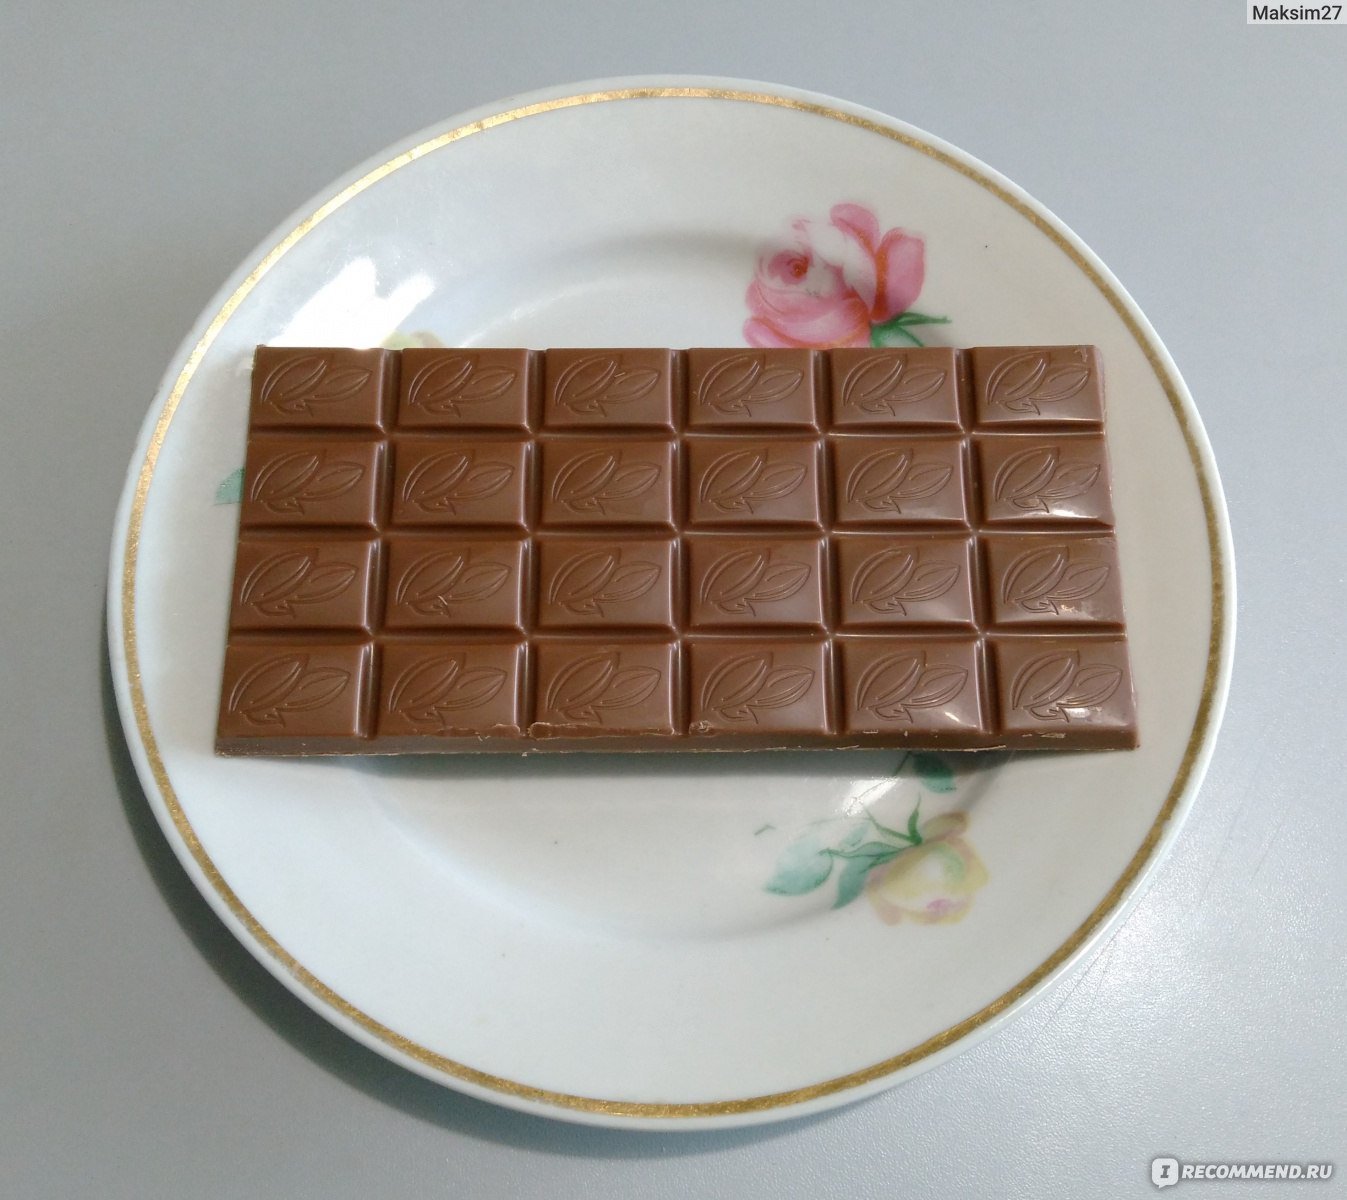 Купить недорогой шоколад. Недорогие шоколадки. Шоколадки простые. Дешевый шоколад. Вкусные и недорогие шоколадки.